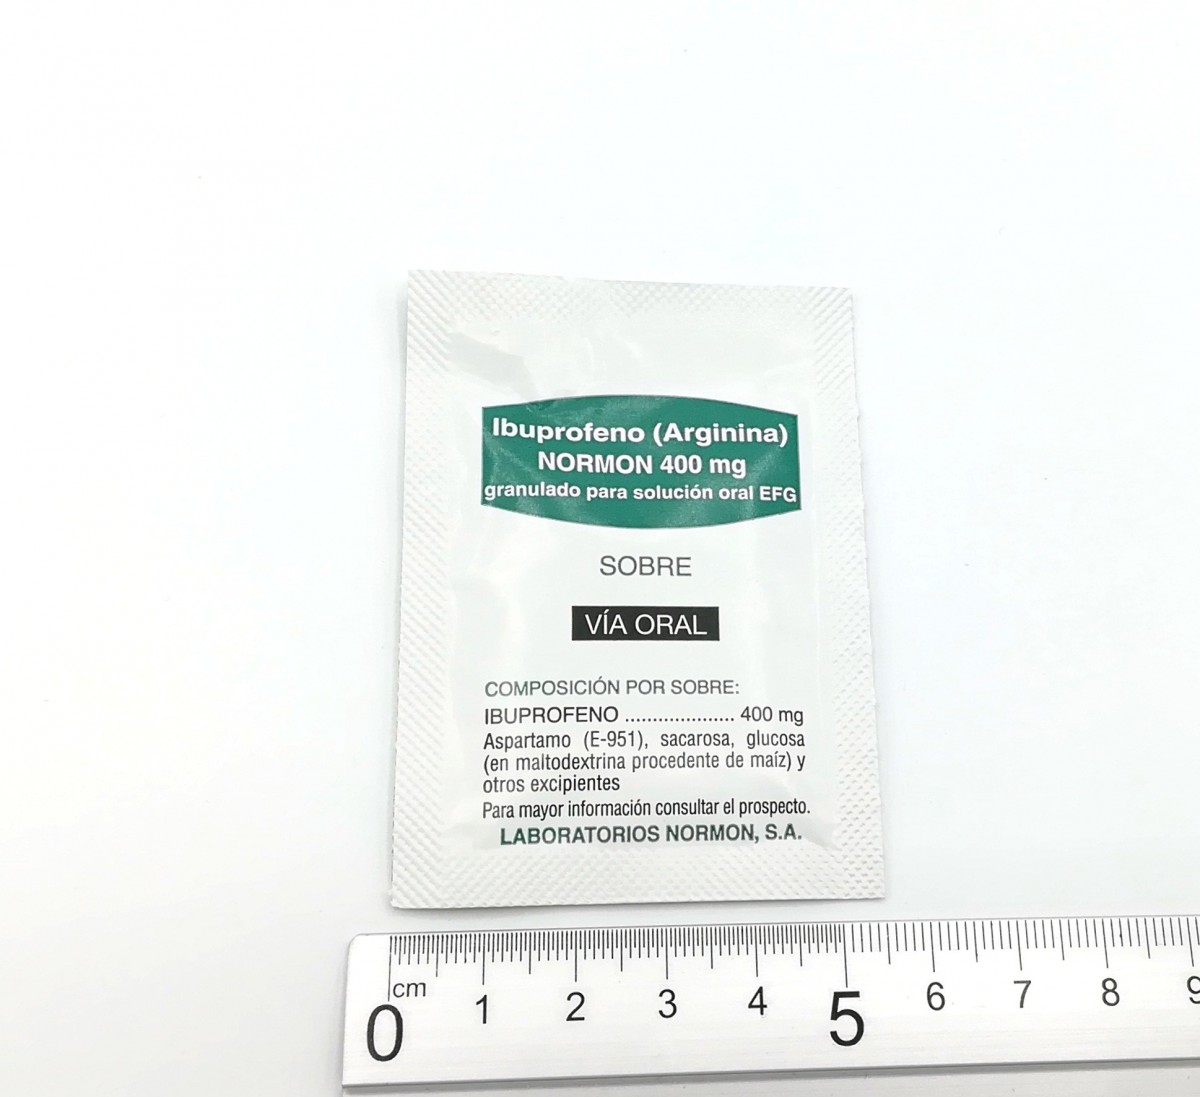 IBUPROFENO (ARGININA) NORMON 400 mg GRANULADO PARA SOLUCION ORAL EFG , 500 sobres fotografía de la forma farmacéutica.